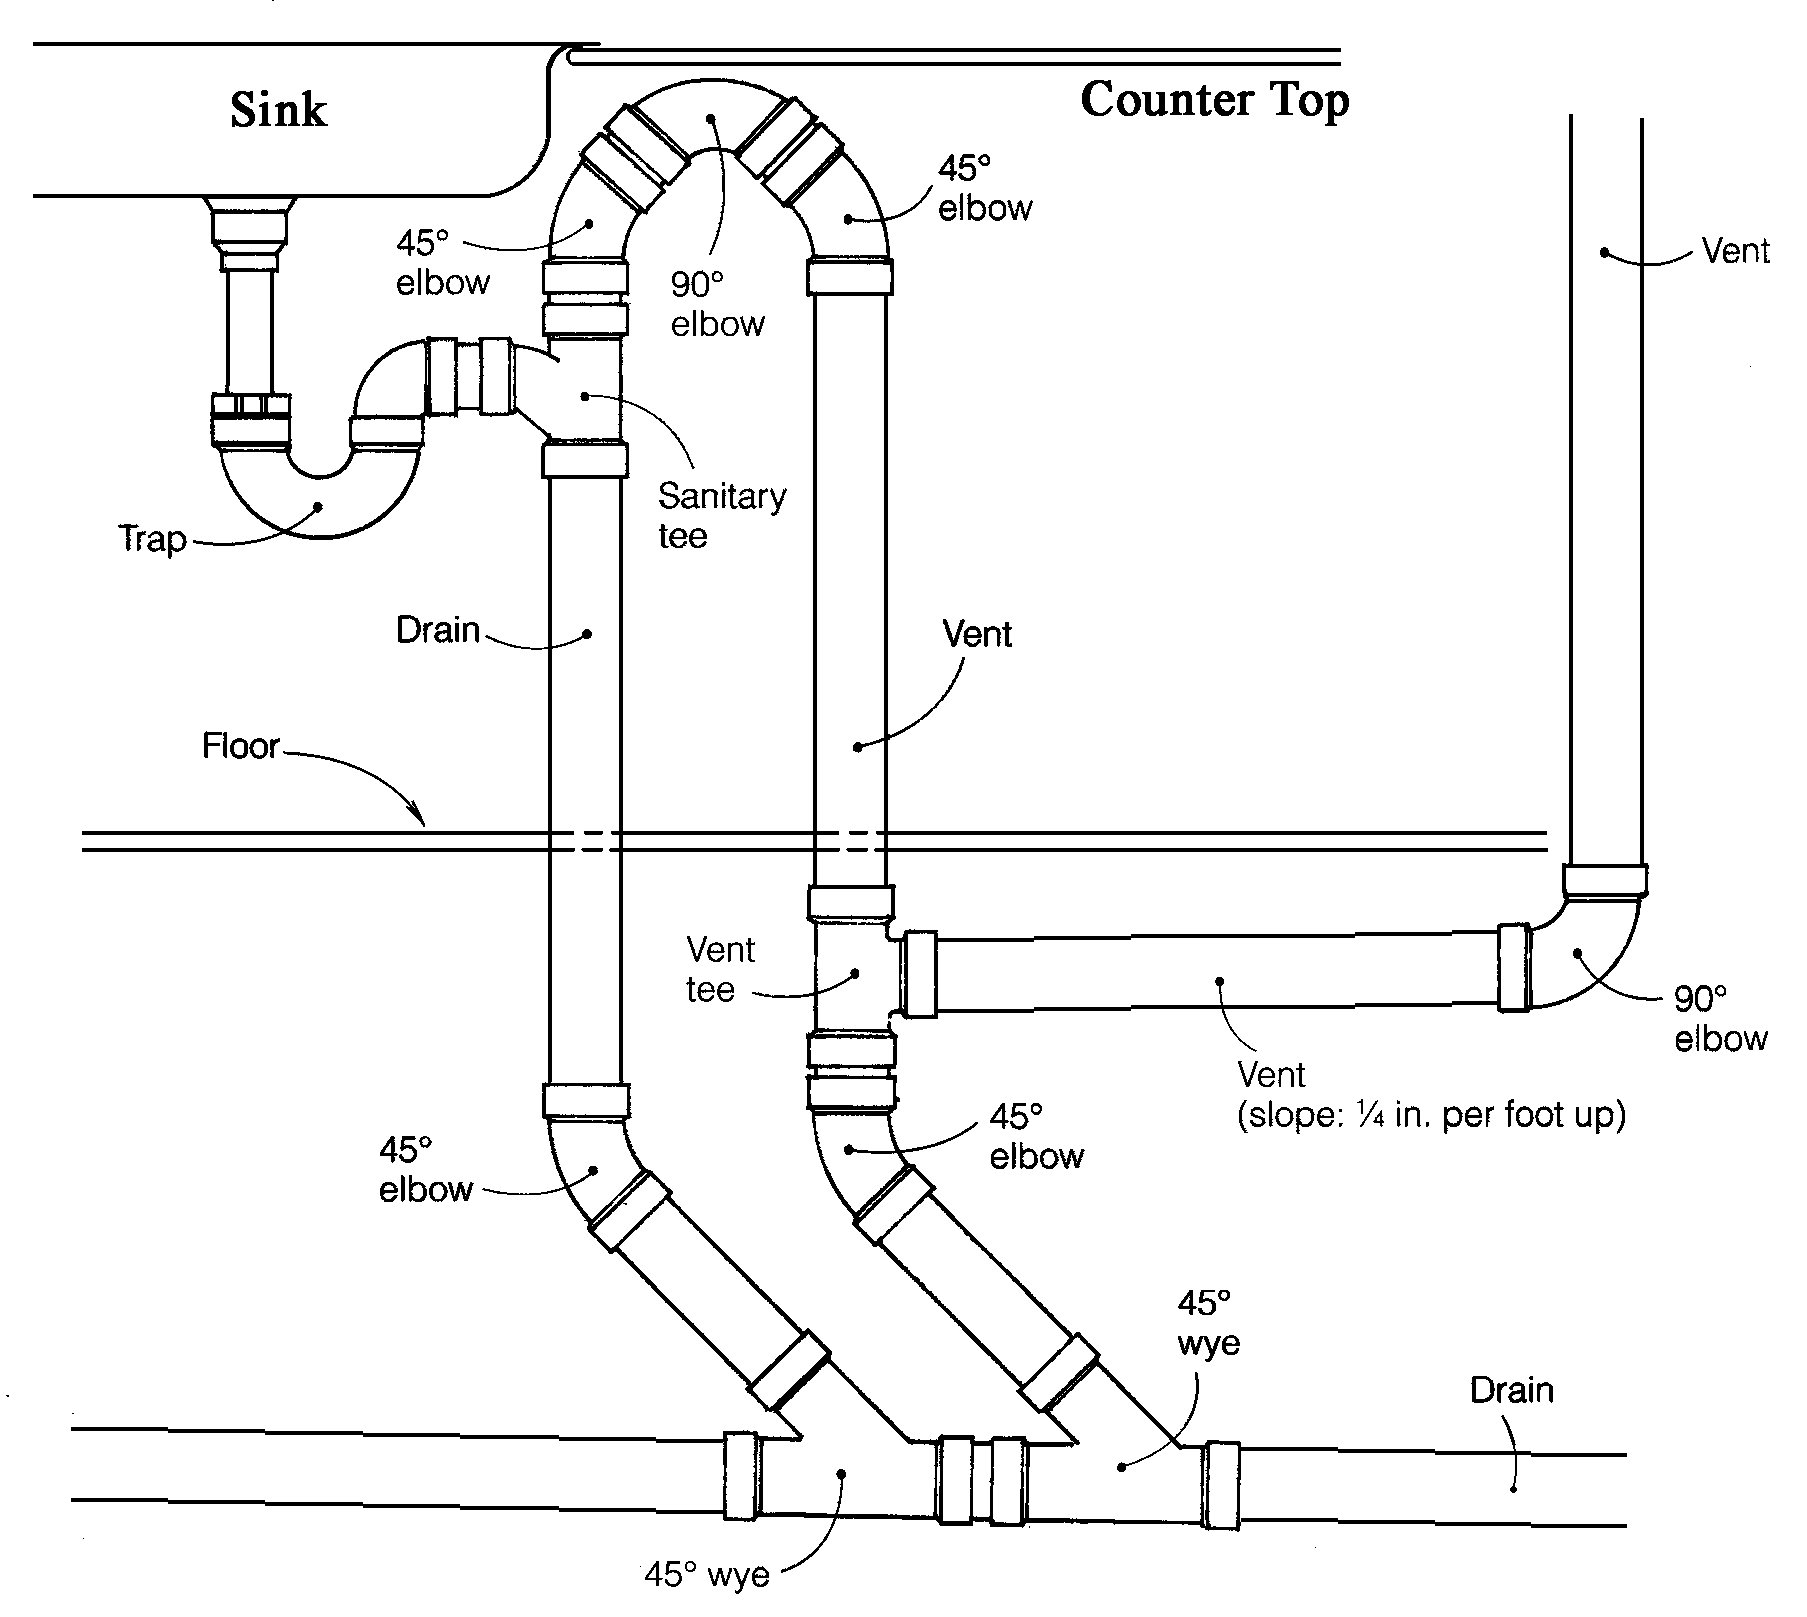 Incredible plumbing and pipe diagram. 